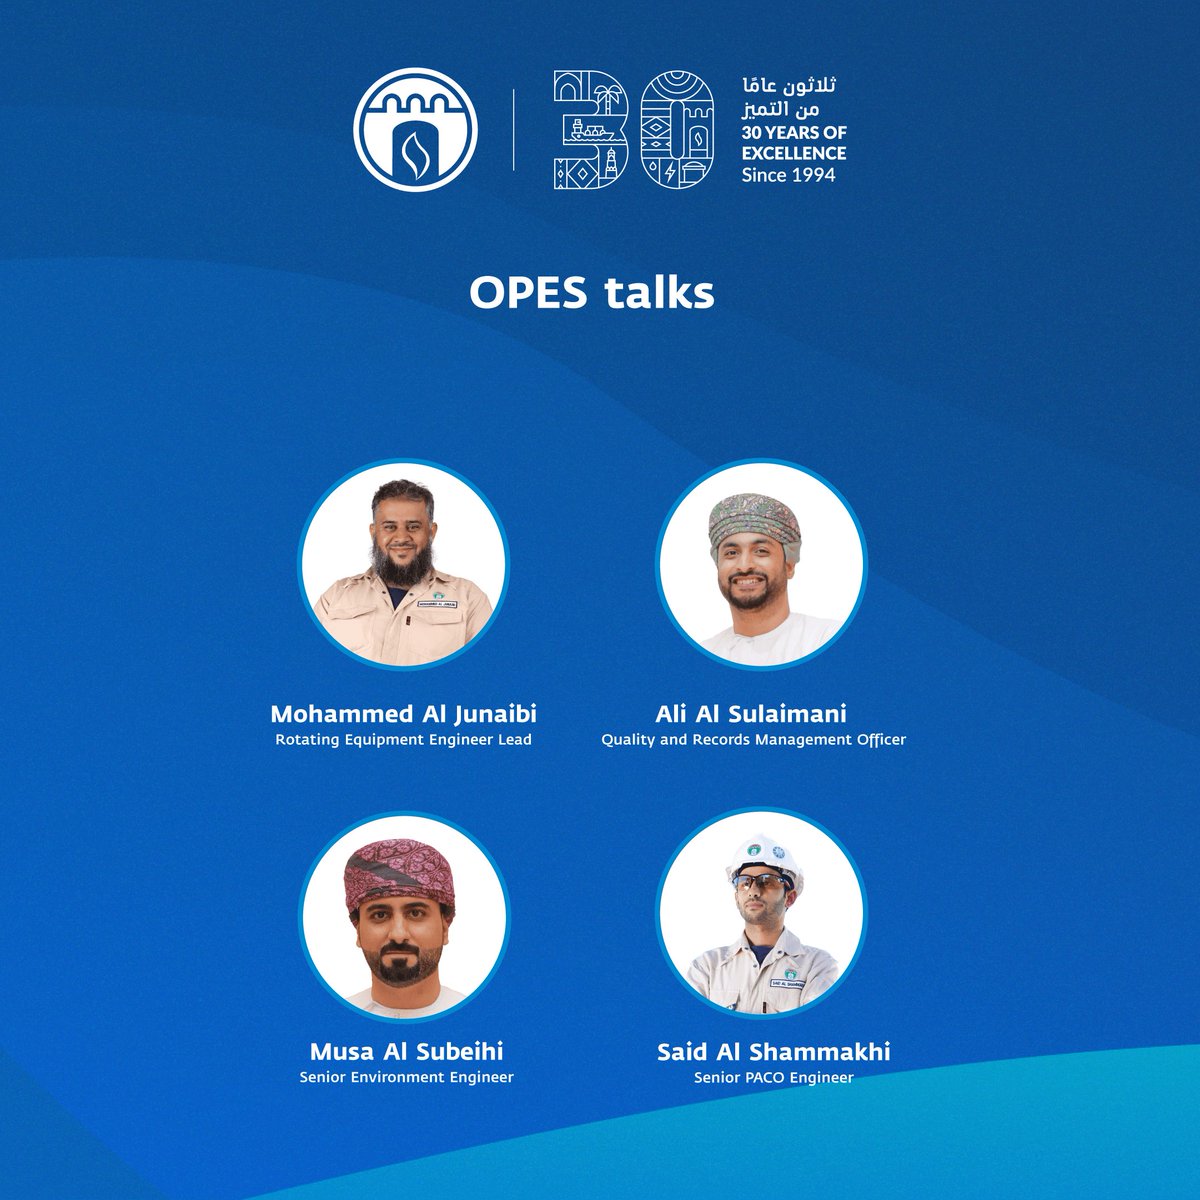 تشارك الشركة العمانية للغاز الطبيعي المسال في مؤتمر عمان للبترول والطاقة لتأكيد التزامها نحو تحقيق طاقة نظيفة ومستدامة. Oman LNG participates in the Oman Petroleum & Energy Show (OPES) to showcase its commitment to Affordable, Sustainable, and Clean Energy.